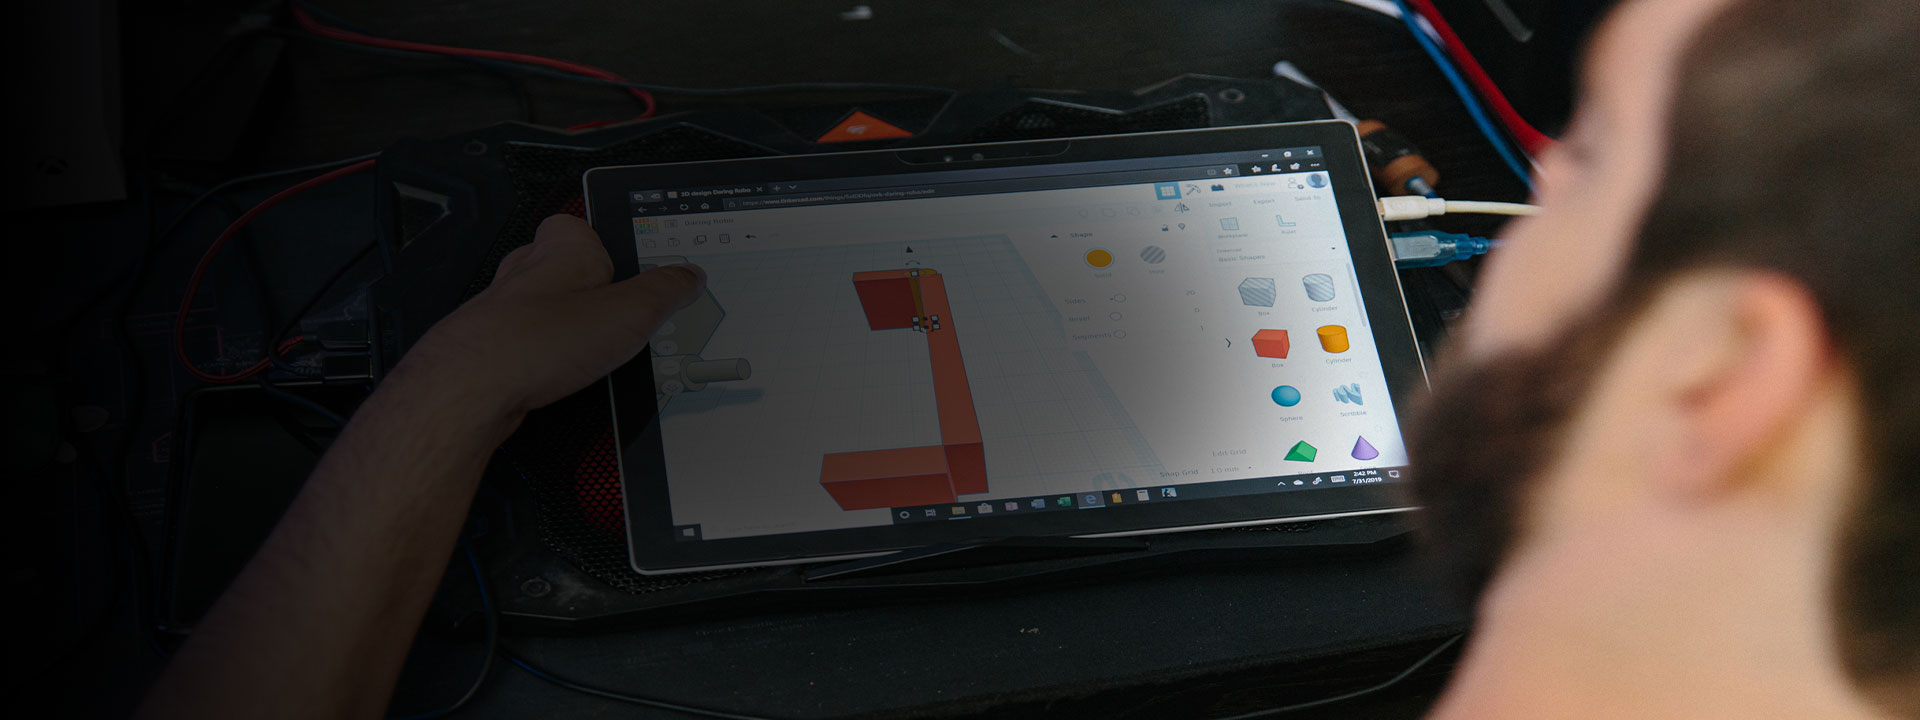 Spencer edita os projetos em seu dispositivo Surface.